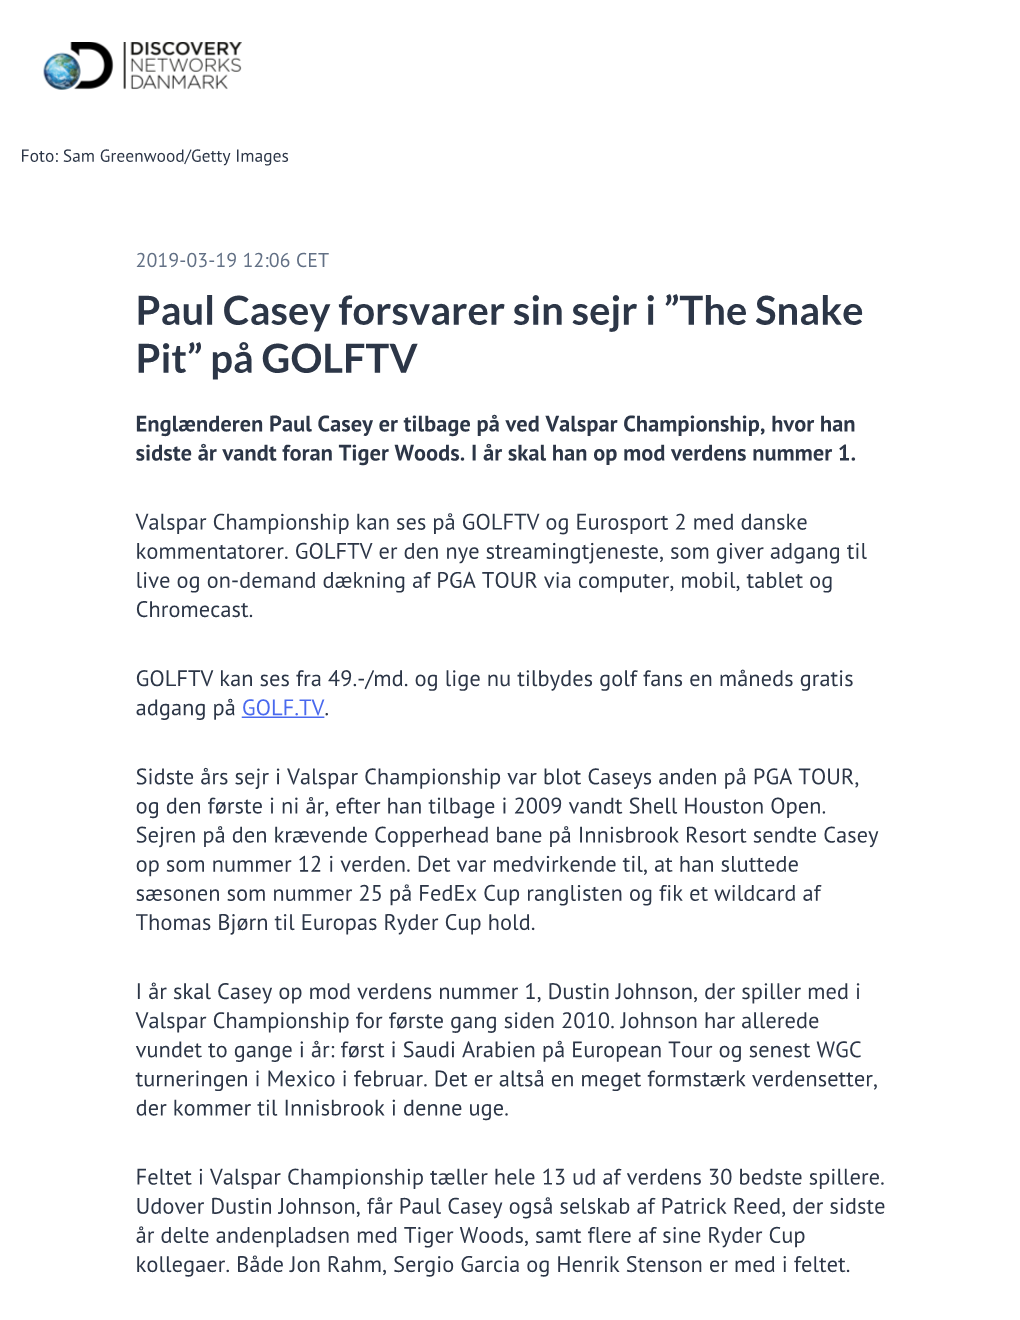 Paul Casey Forsvarer Sin Sejr I ”The Snake Pit” På GOLFTV